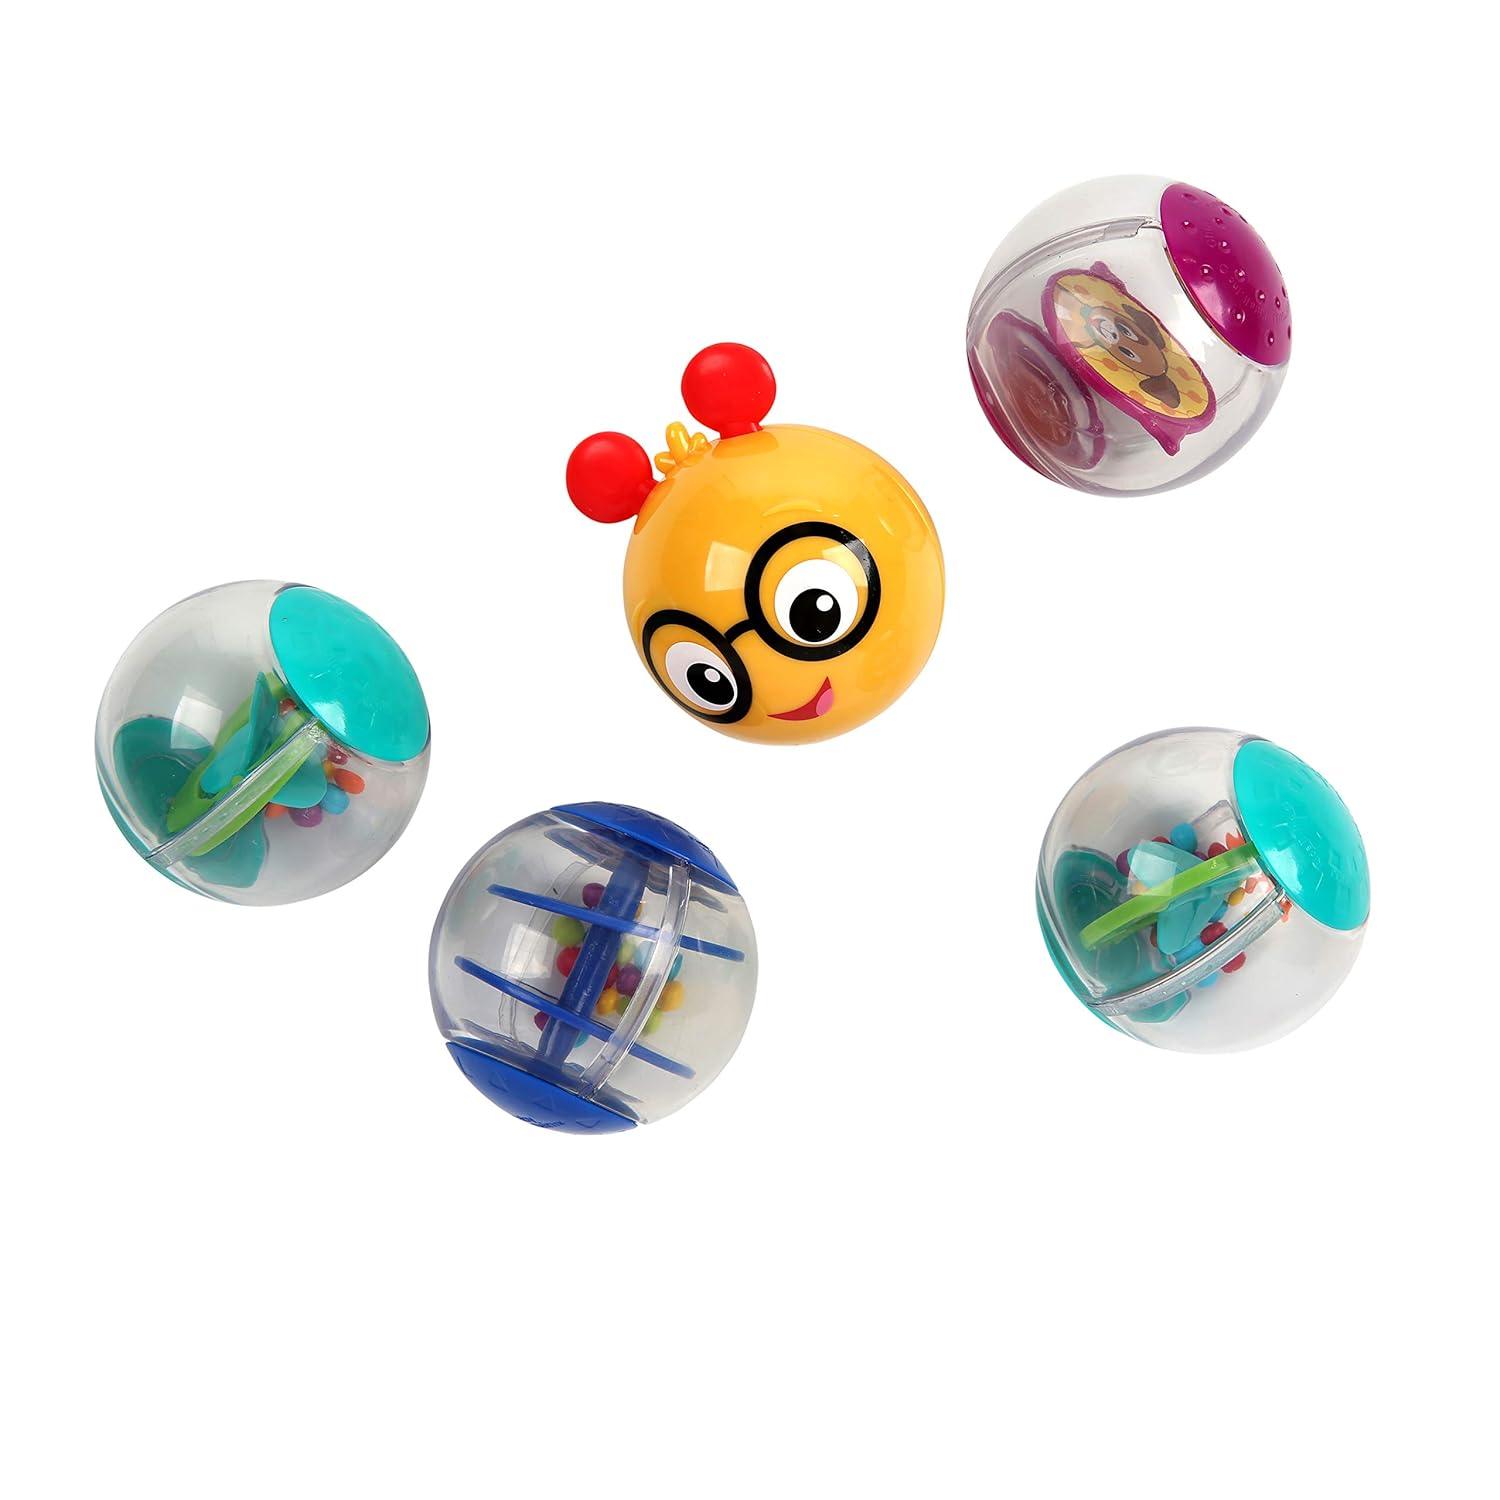 Baby Einstein - Roller-pillar Activity Balls Toy - Smiling Rainbow Baby Store